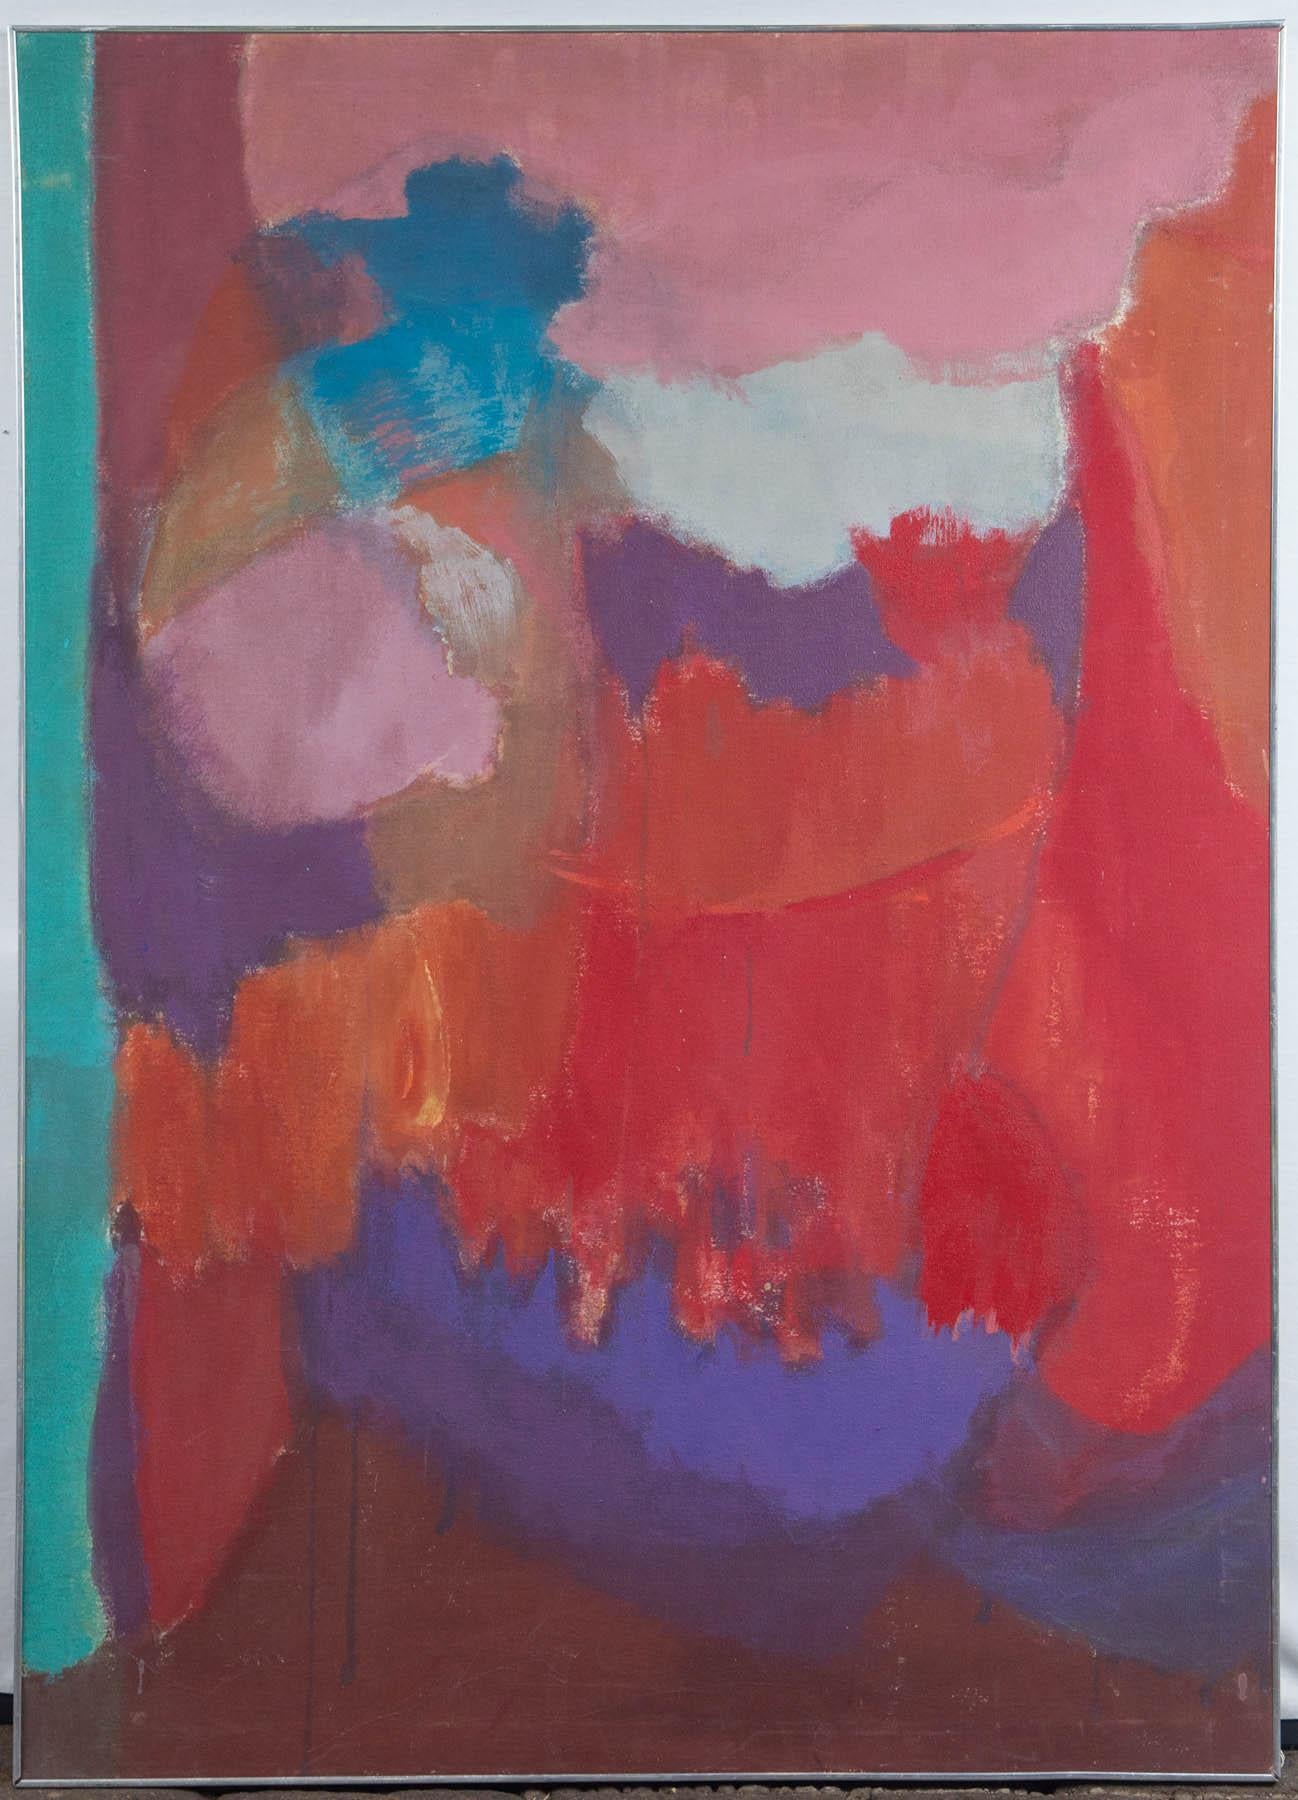 Amerikanische Künstlerin, Elsa Schachter, geboren 1912. Abstrakte Öl auf Leinwand von rosa, lila, rot, türkis. Auf der Rückseite signiert. Eingerahmt in einen dünnen Chromrahmen,
um 1960.